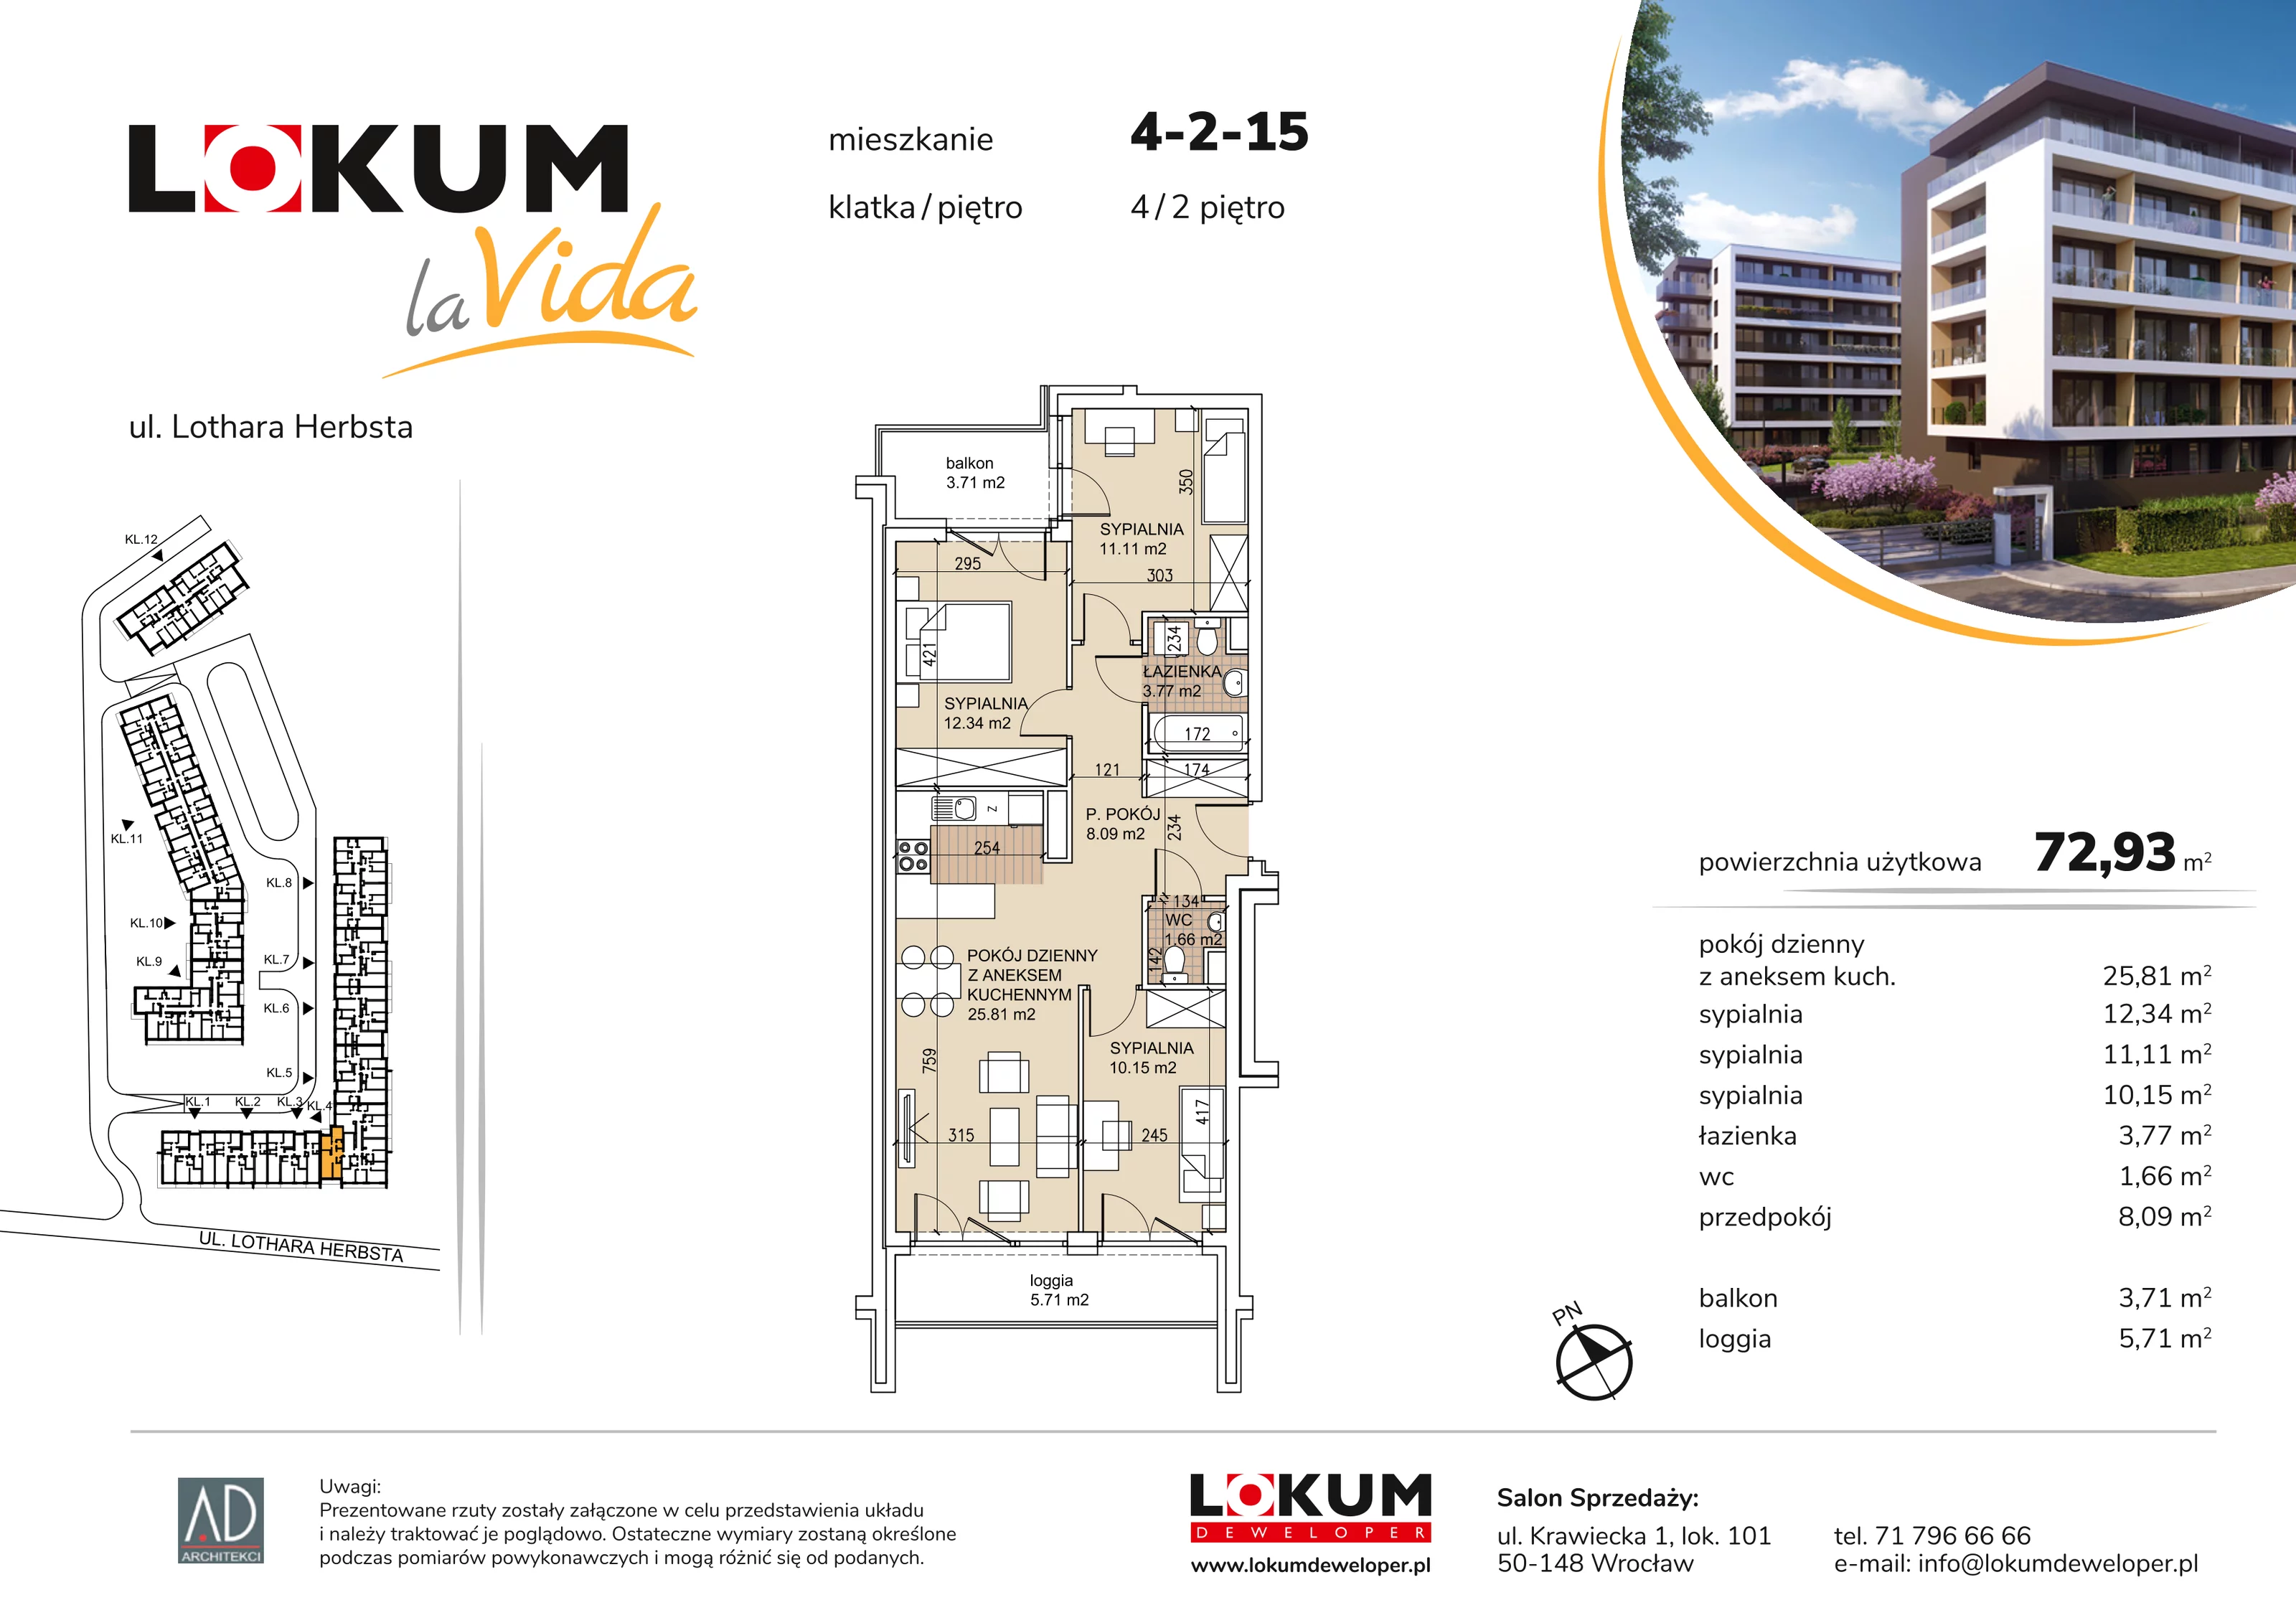 Mieszkanie 72,93 m², piętro 2, oferta nr 4-2-15, Lokum la Vida, Wrocław, Sołtysowice, ul. Lothara Herbsta